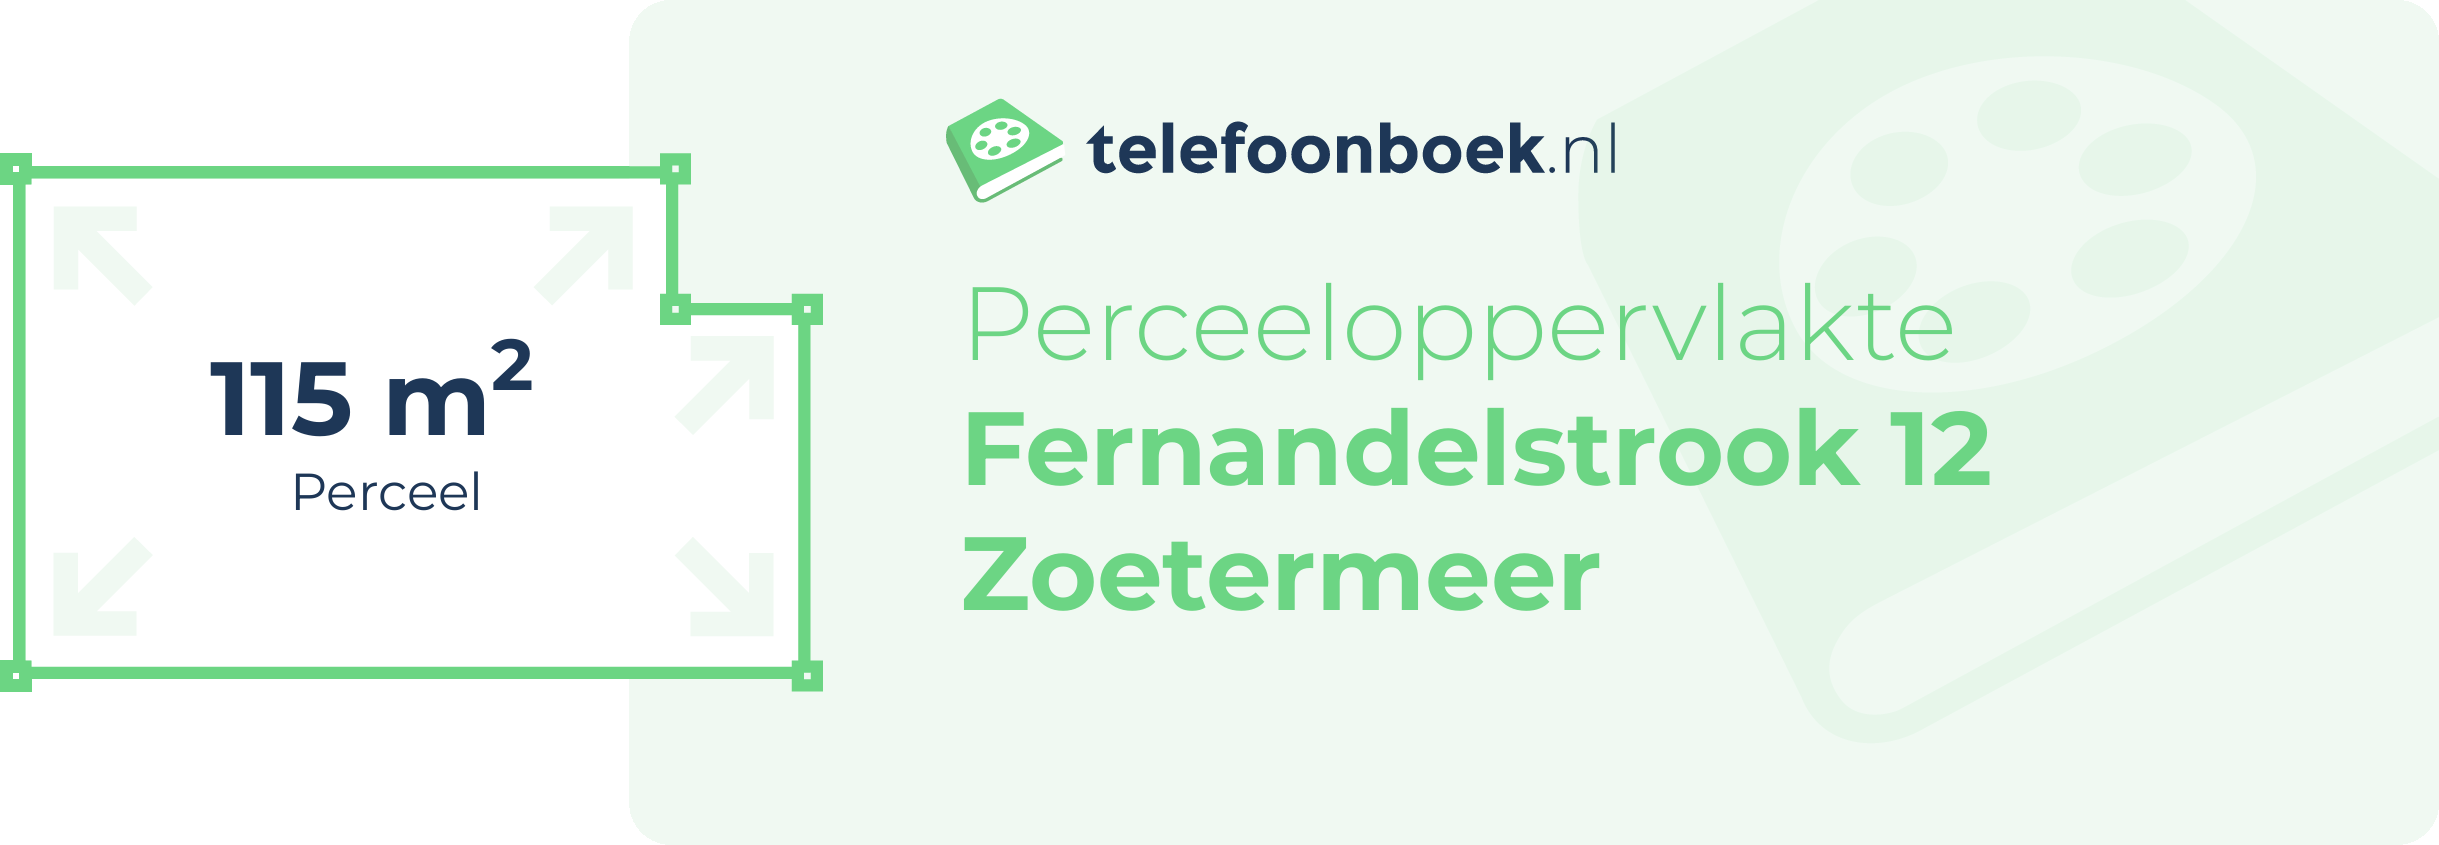 Perceeloppervlakte Fernandelstrook 12 Zoetermeer